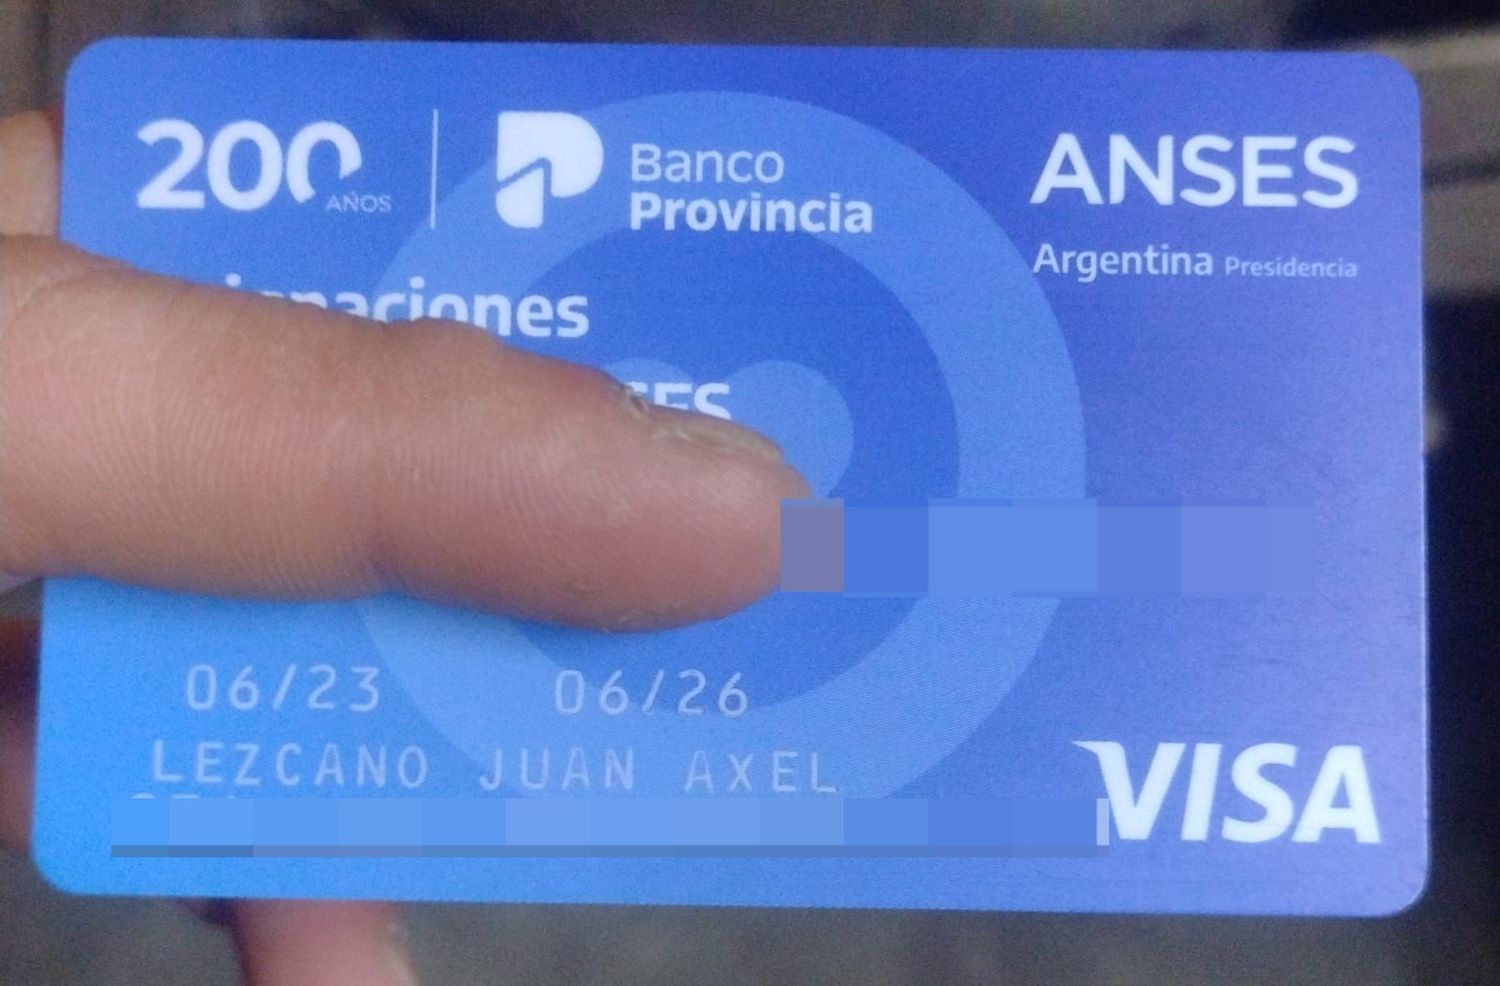 Encontraron tarjeta de Juan Axel Lezcano